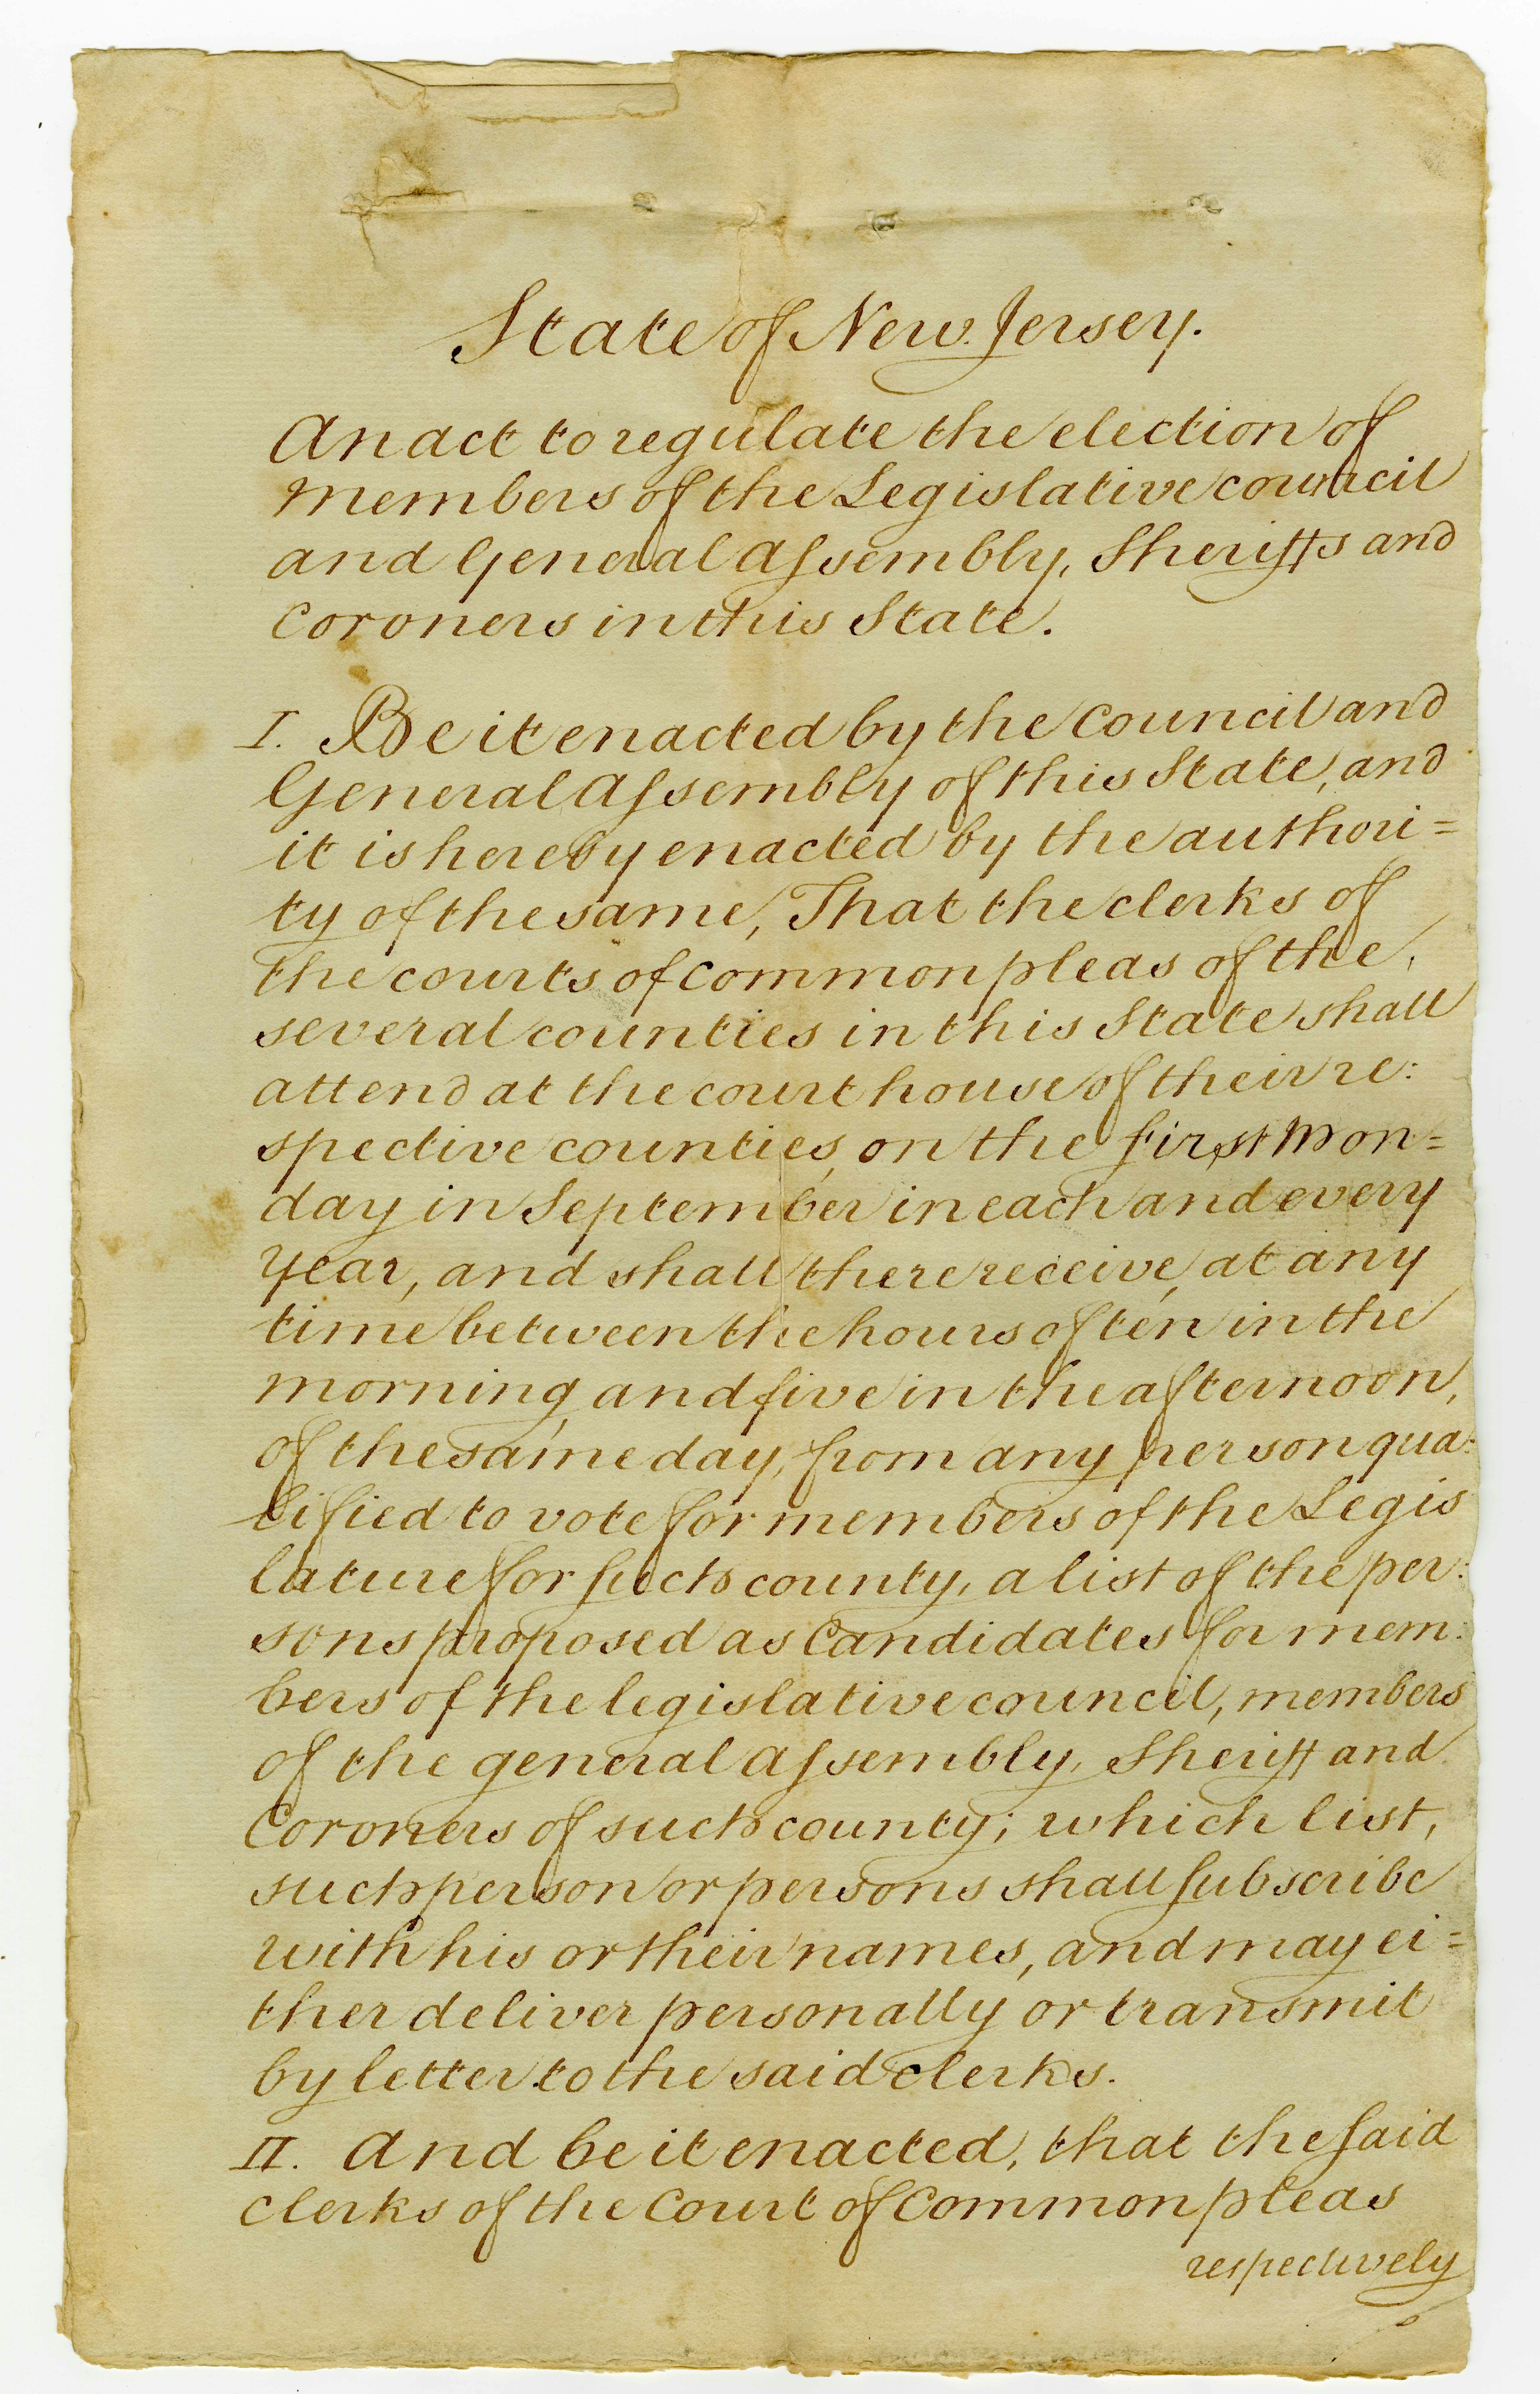 1797 statute.